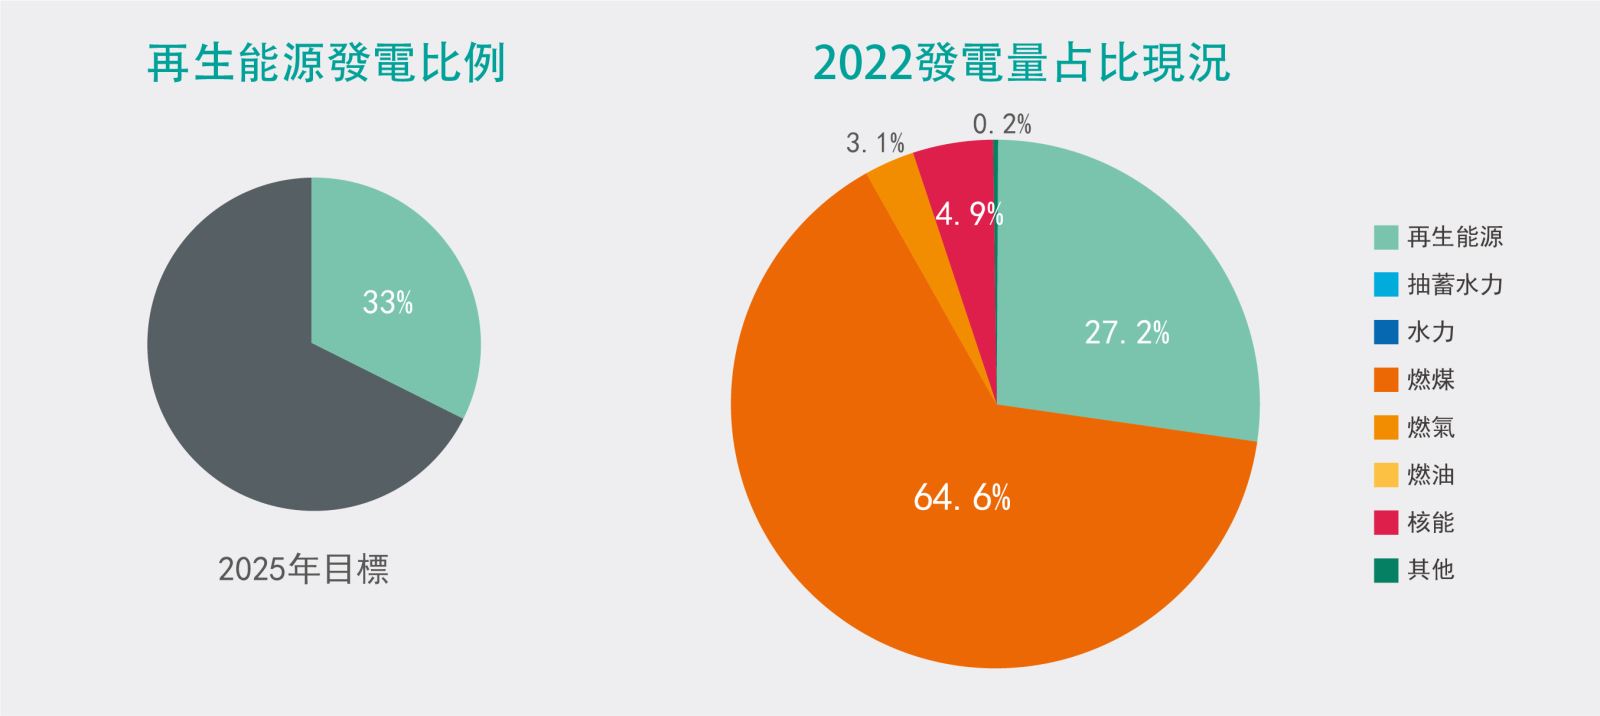 中國大陸再生能源發電占比目標與現況